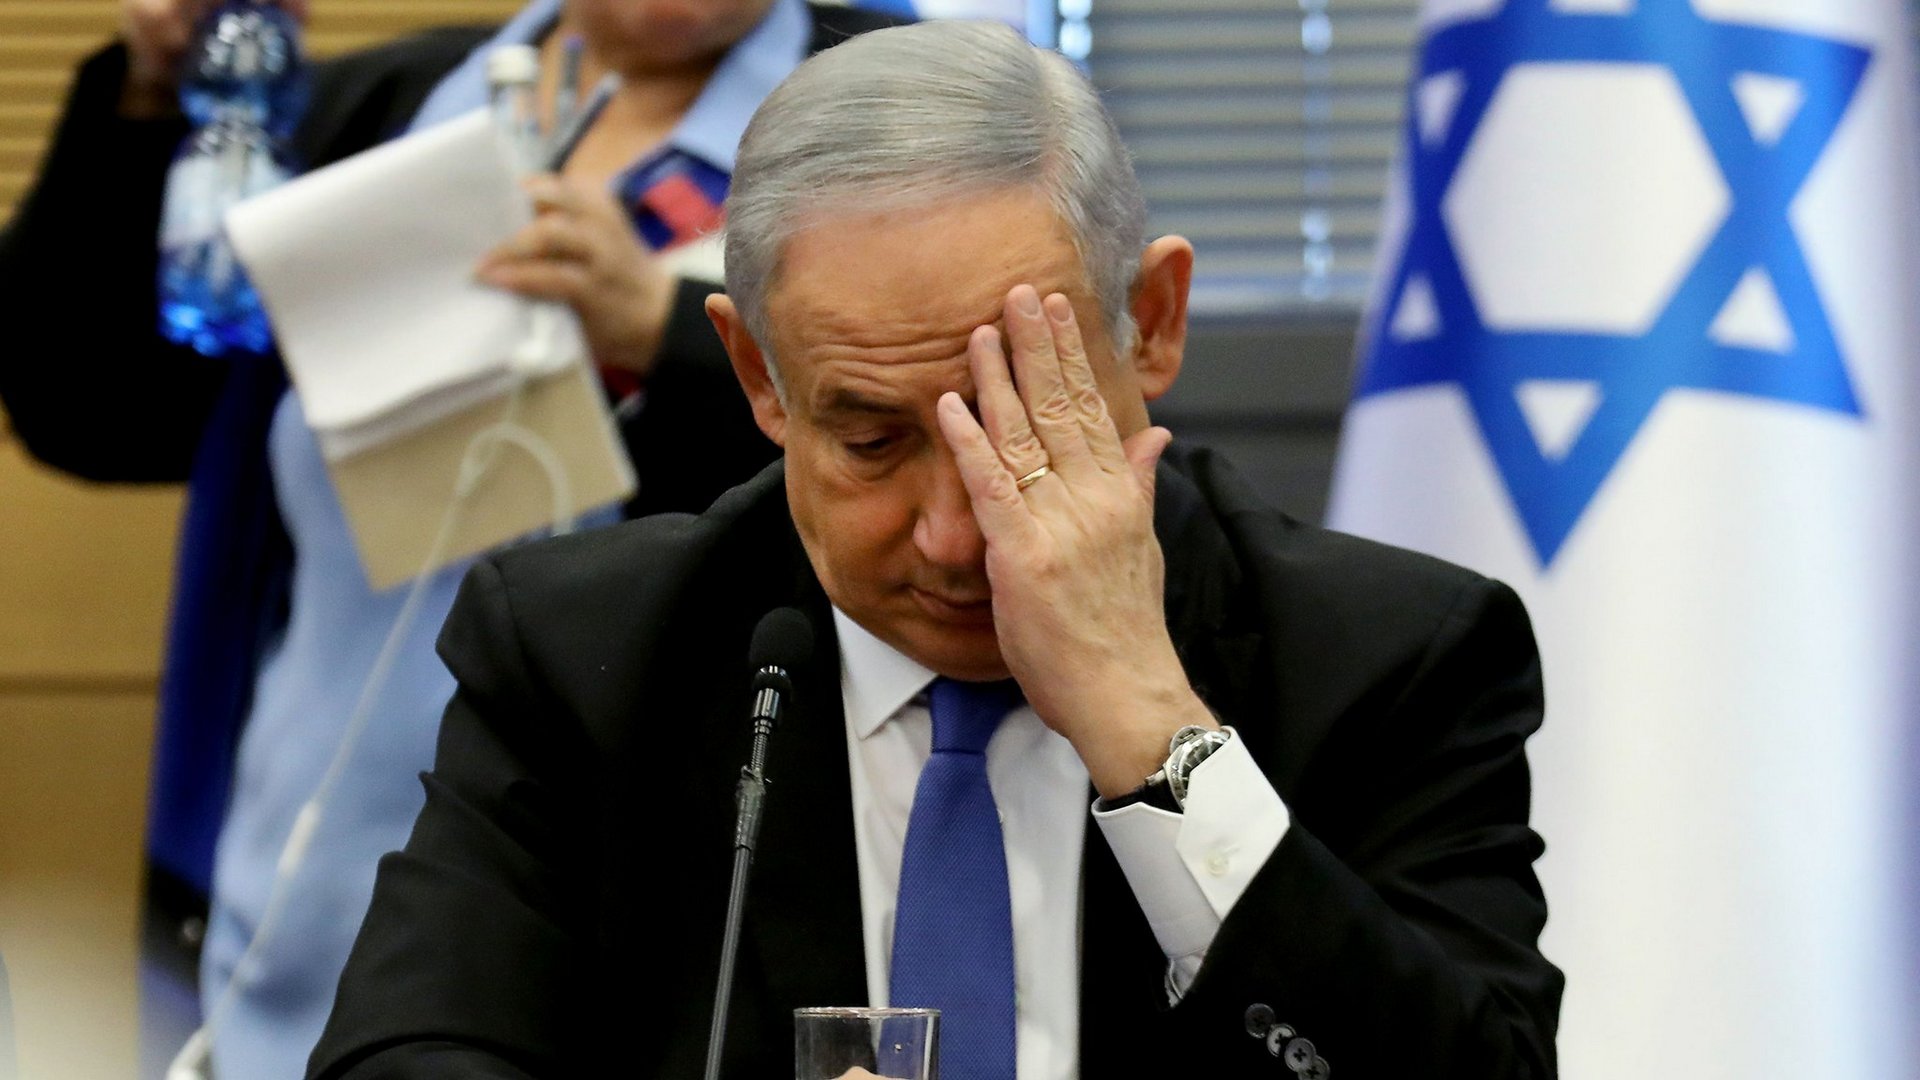 محلل عسكري إسرائيلي: نتنياهو يواصل ترديد شعاراته الفارغة.. و"عمليات الجيش" لن تعيد الأسرى - وكالة قدس برس للأنباء